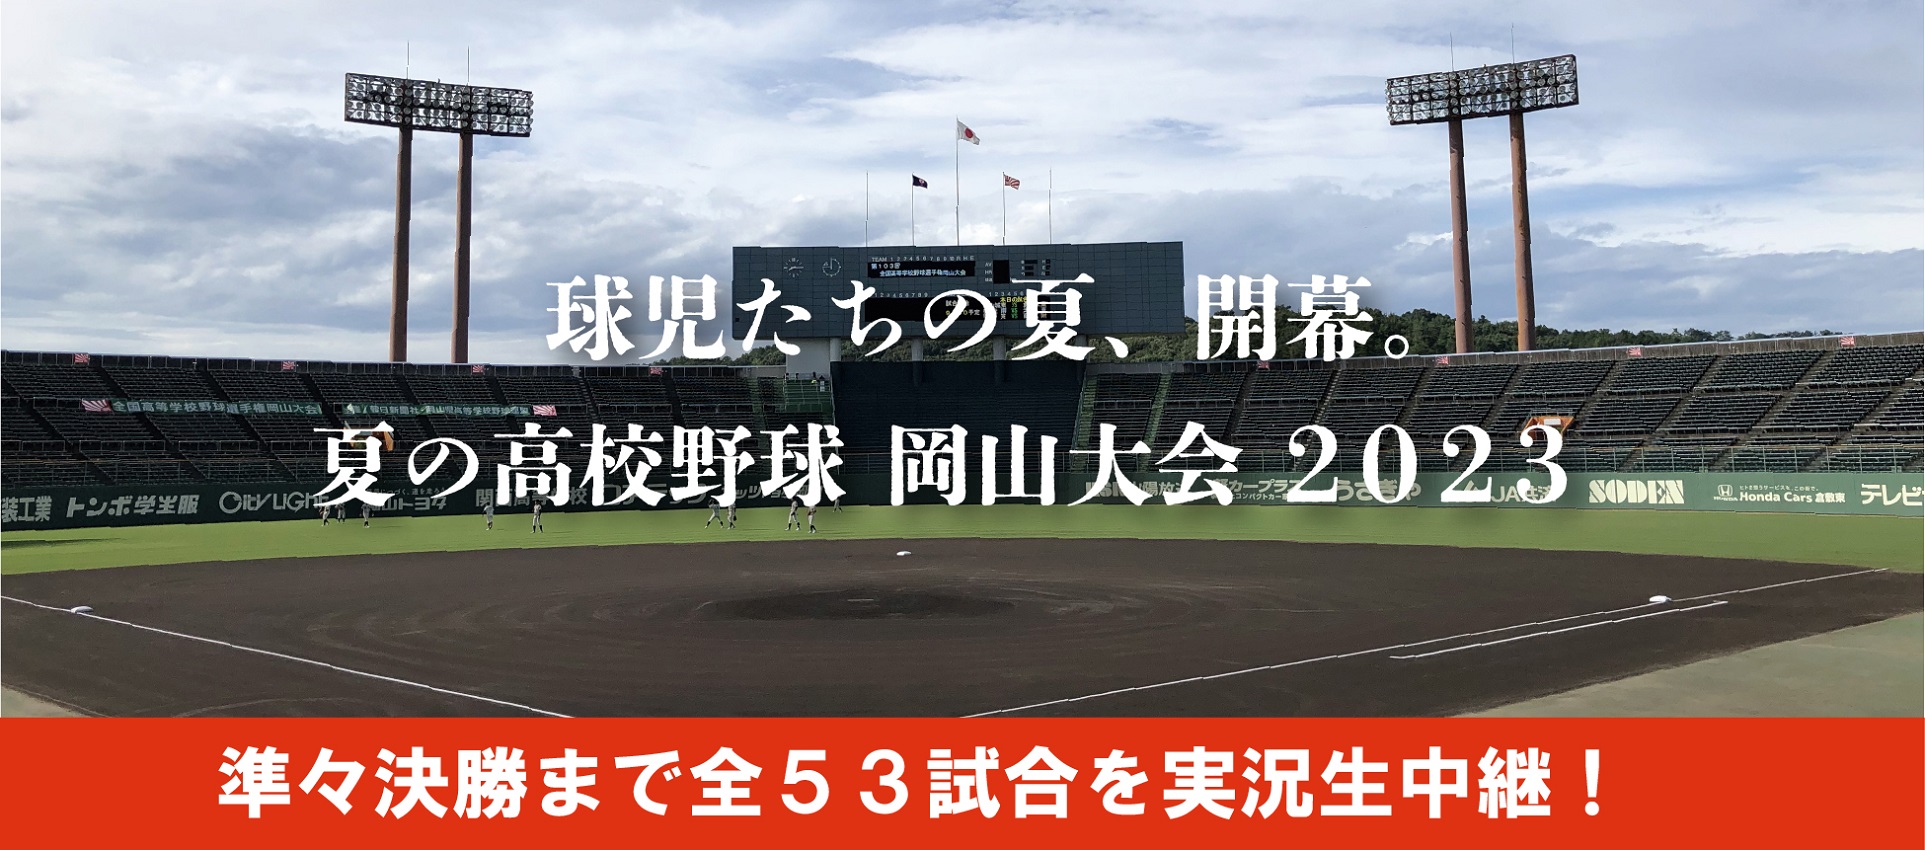 夏の高校野球 岡山大会